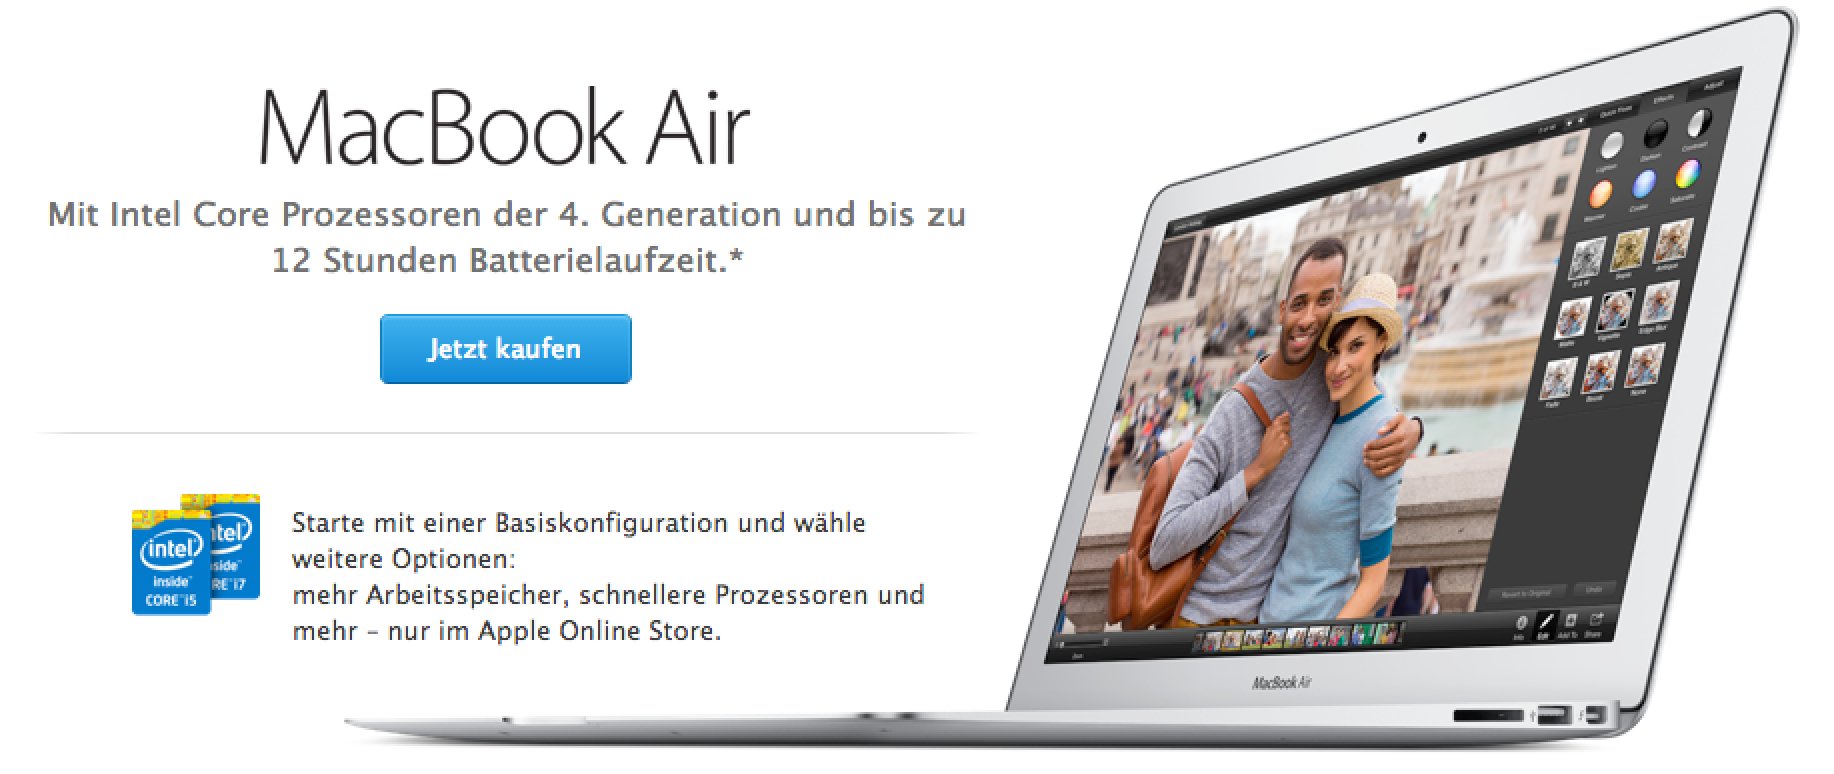 Macbook Air 2014 ist da - schneller und 100 Euro billiger! 5